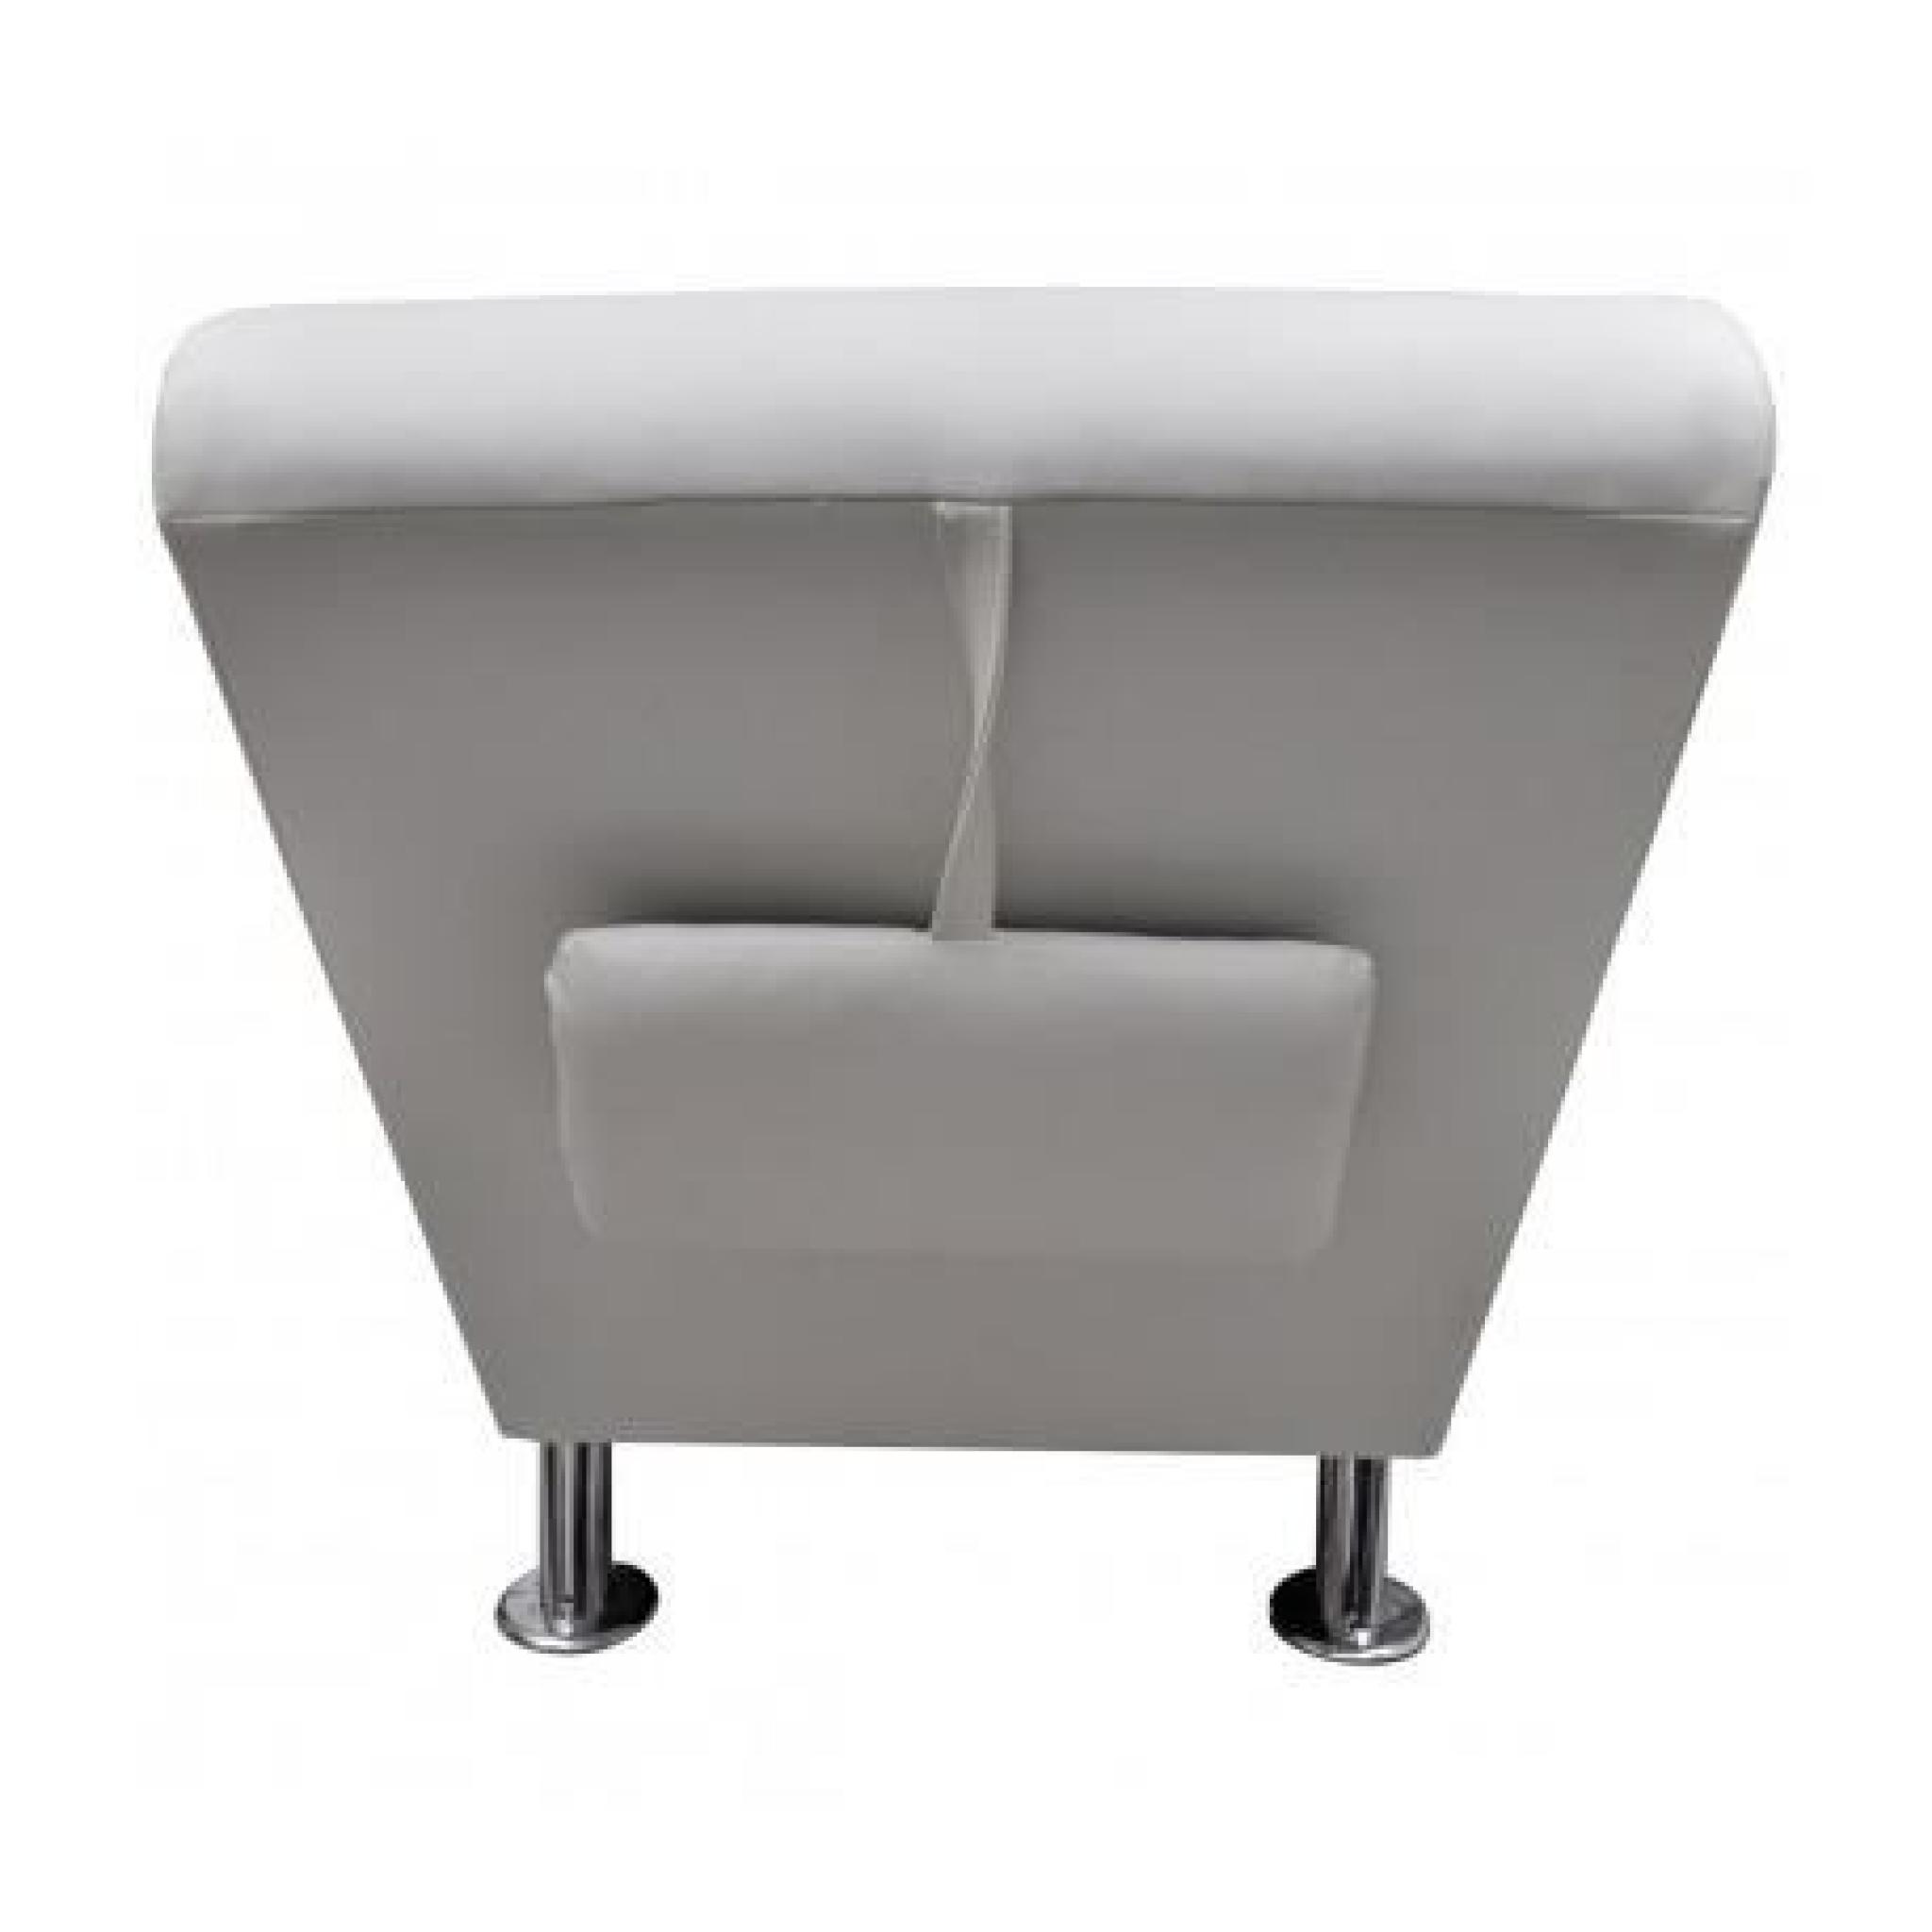 Chaise longue / Transat blanc avec appui-tête Maja+ pas cher